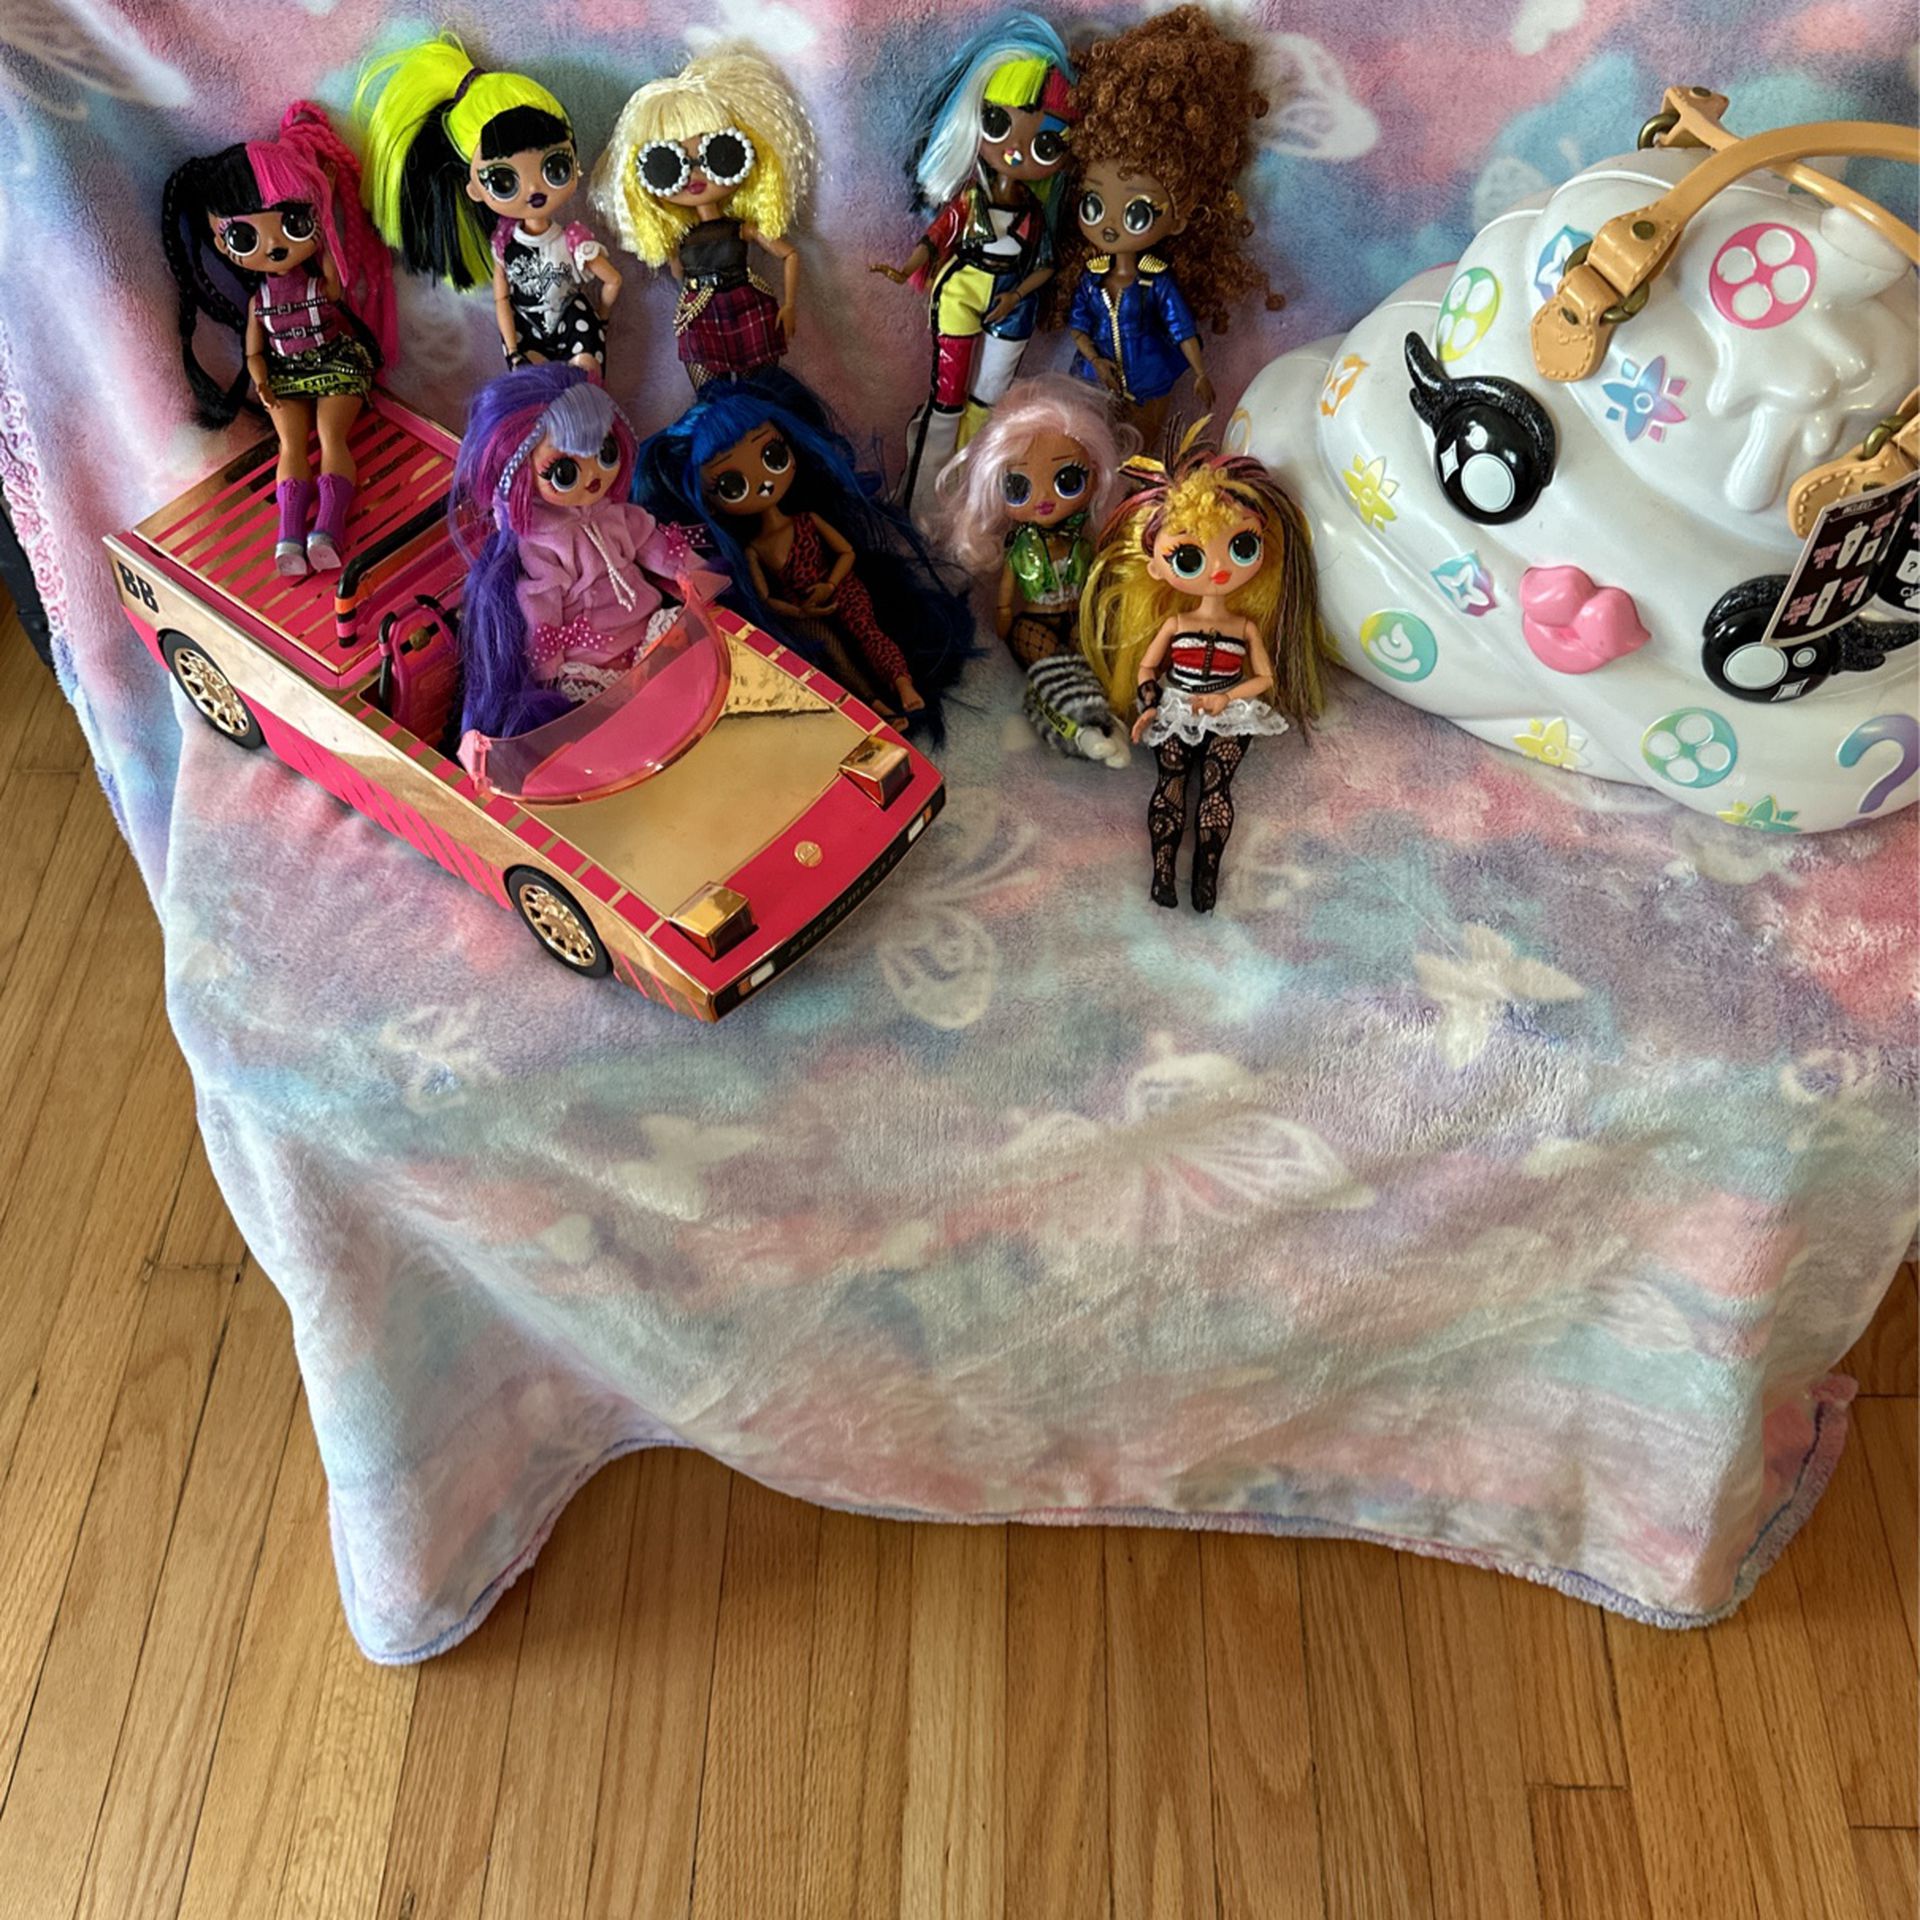 L.O.L dolls and purse